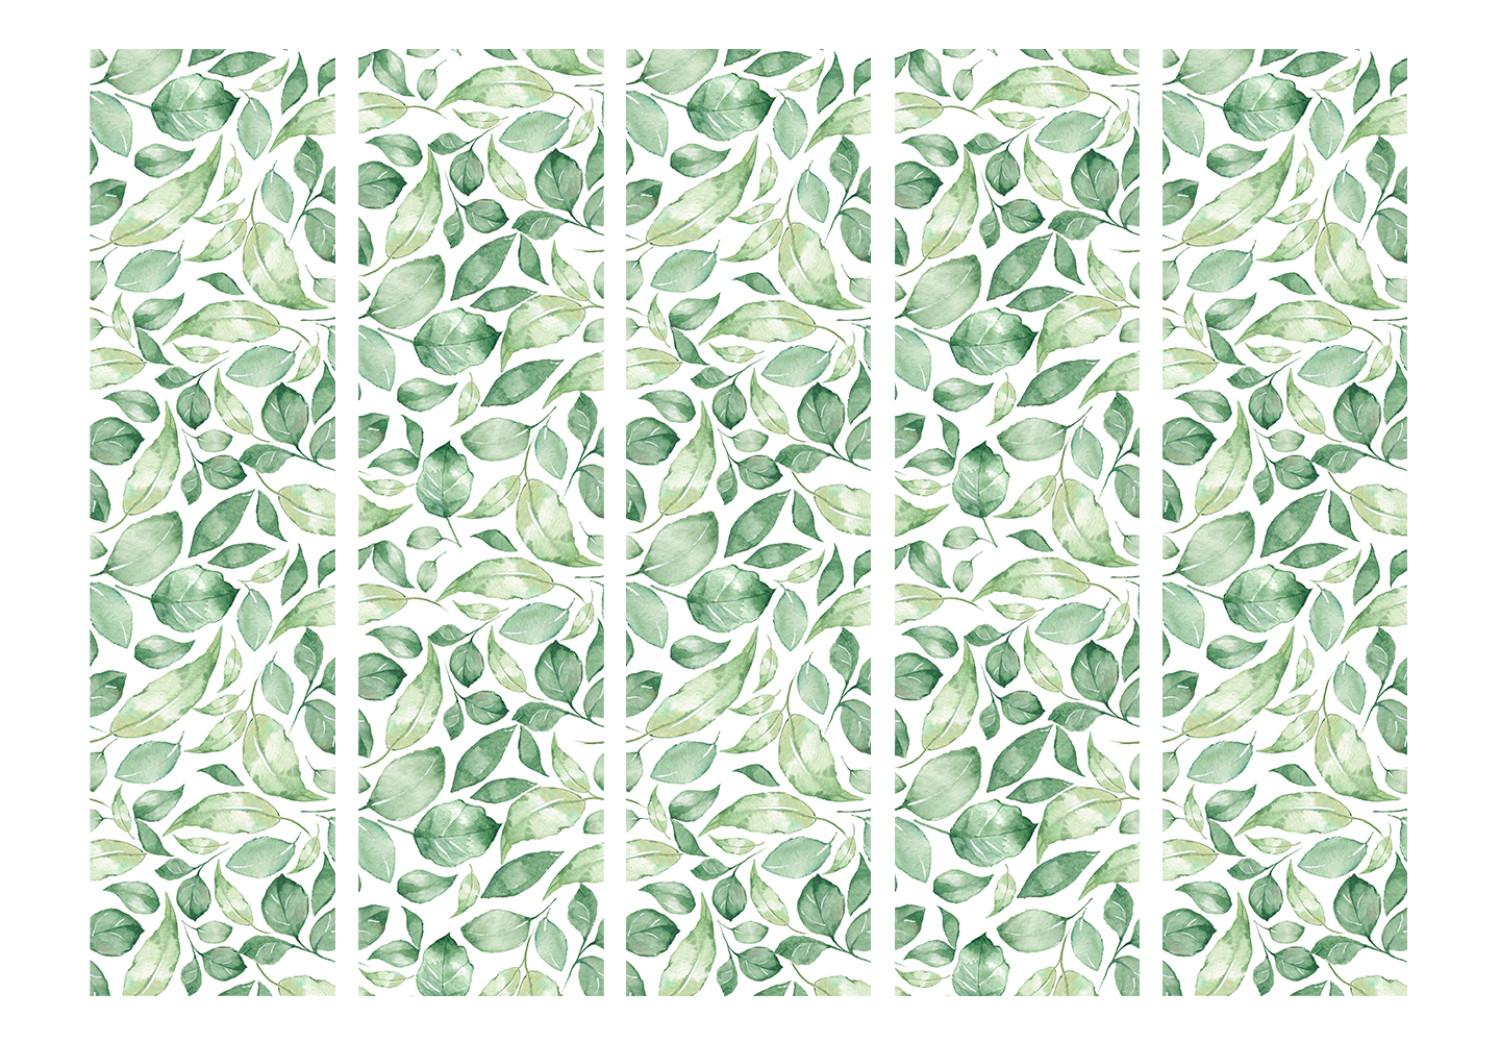 Biombo barato Belleza Natural II (5 partes) - patrón de hojas verdes